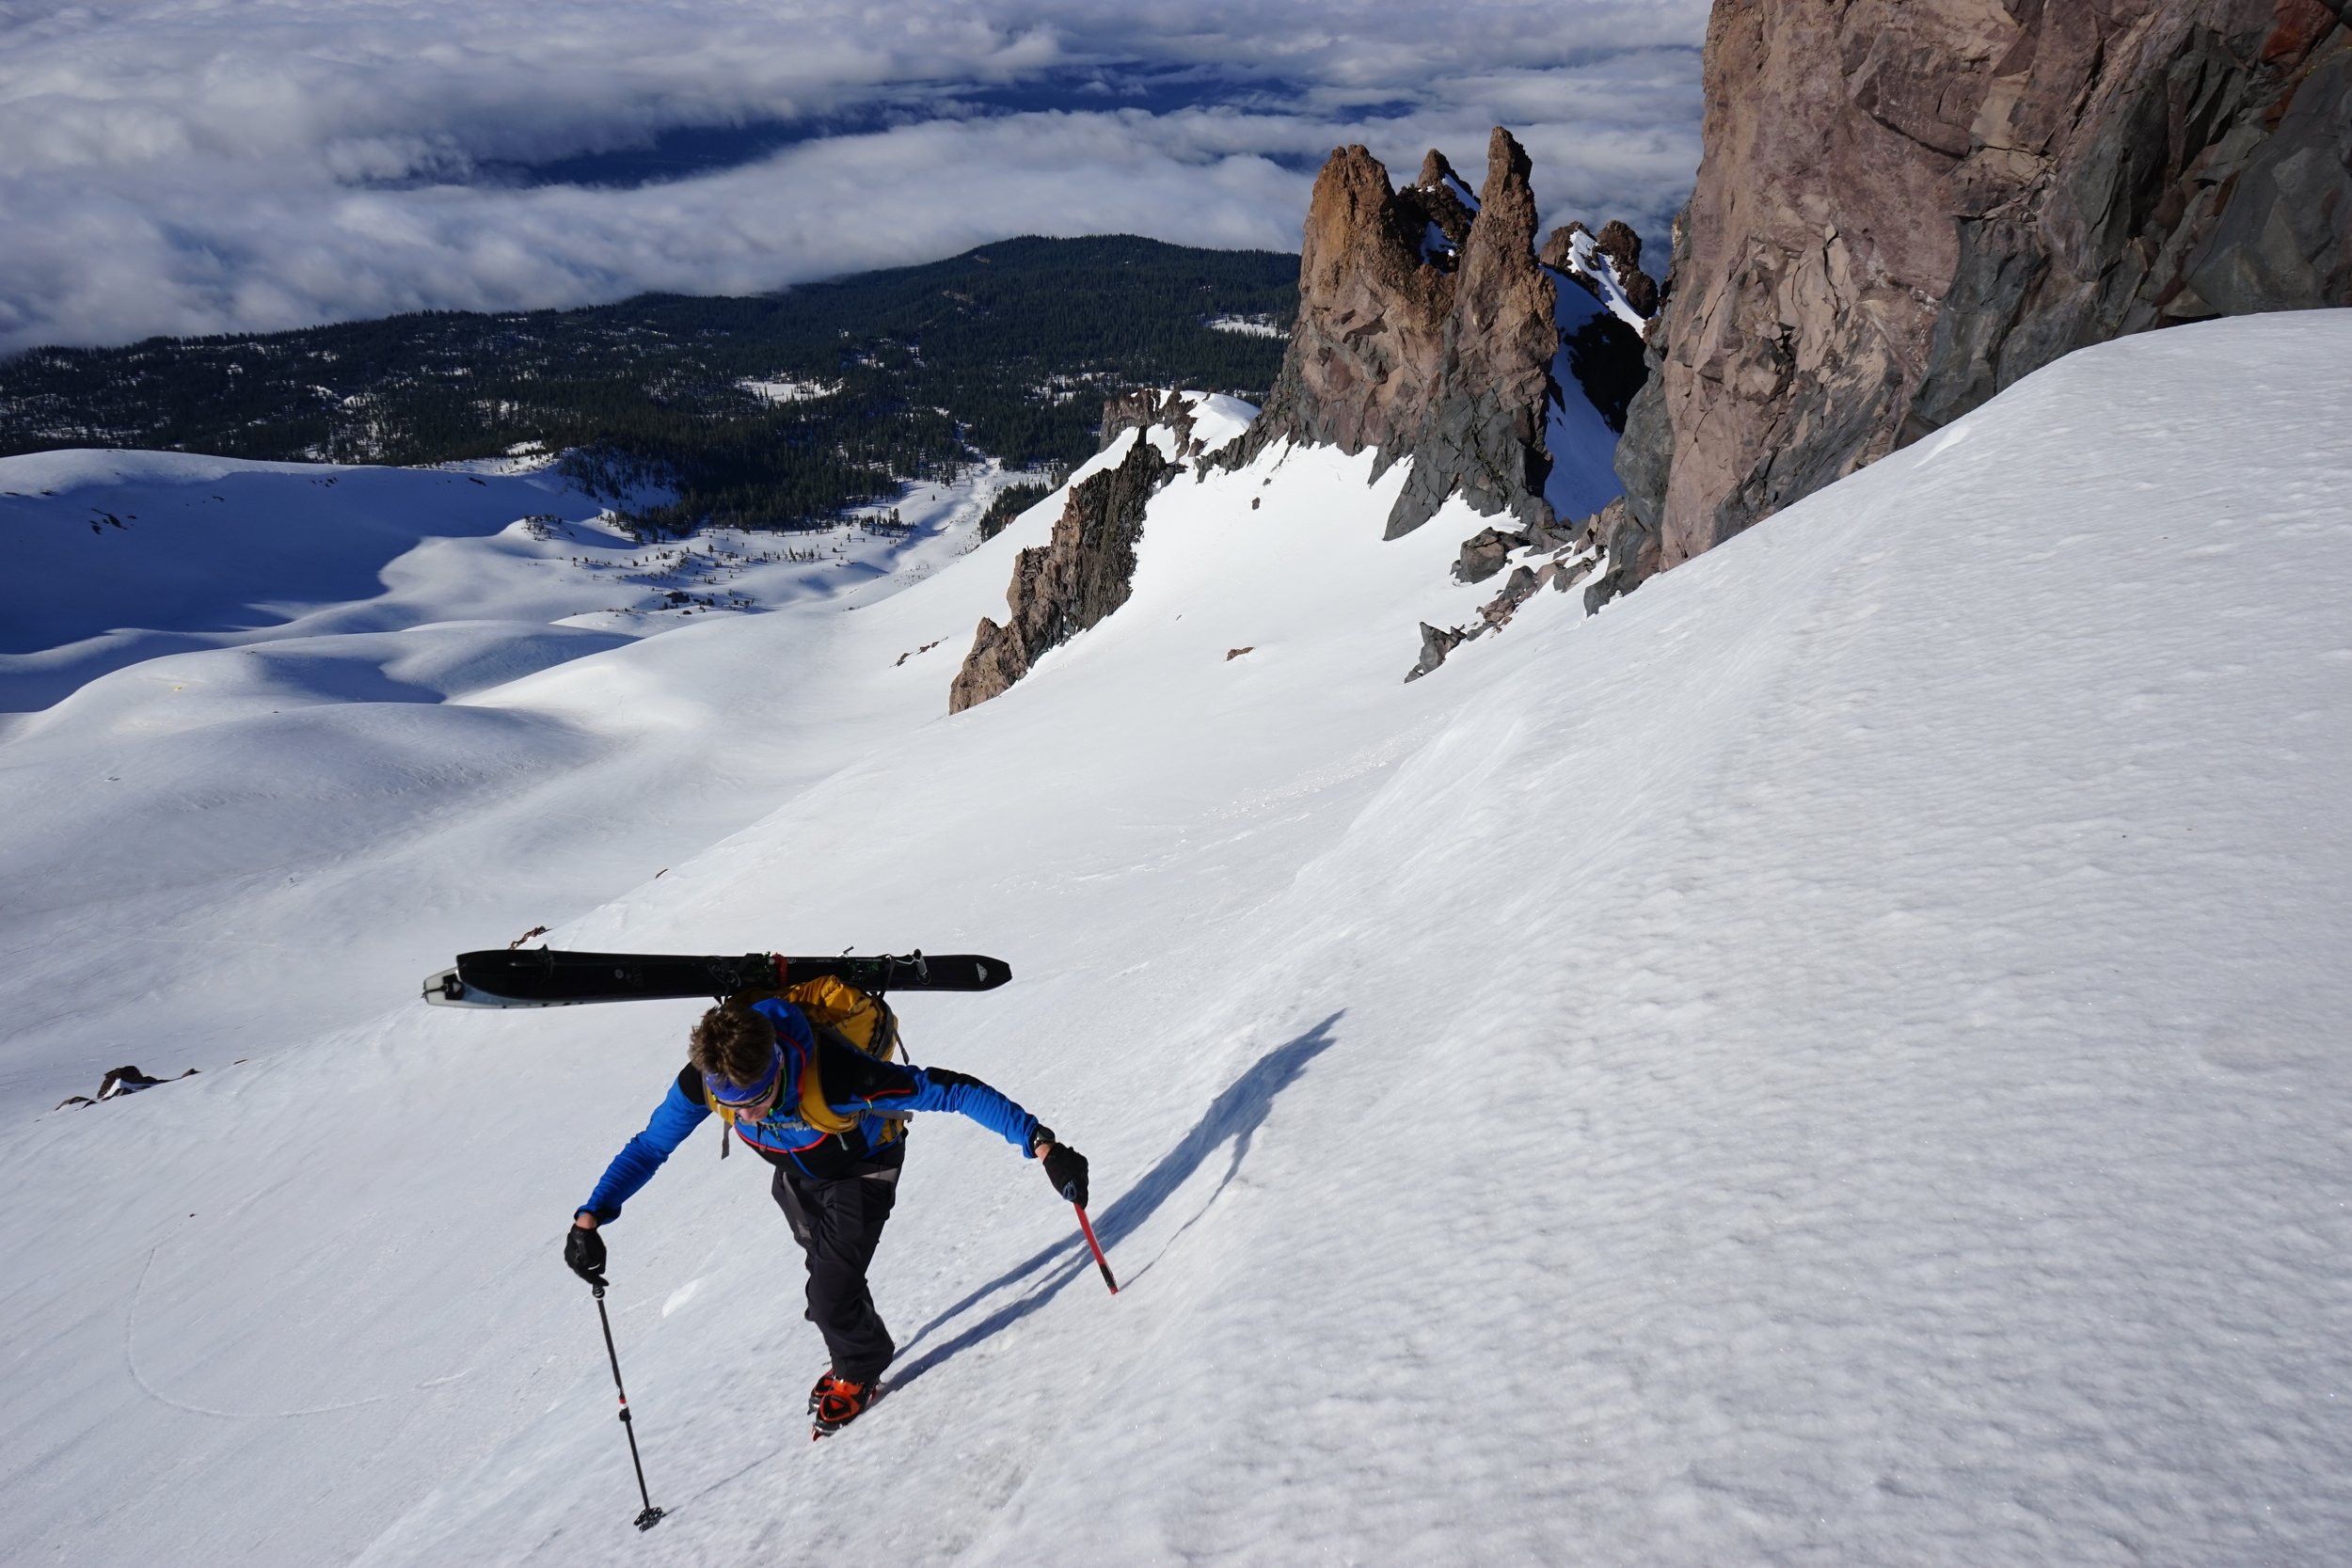 Ski mountaineer climbs toward the summit of mt shasta